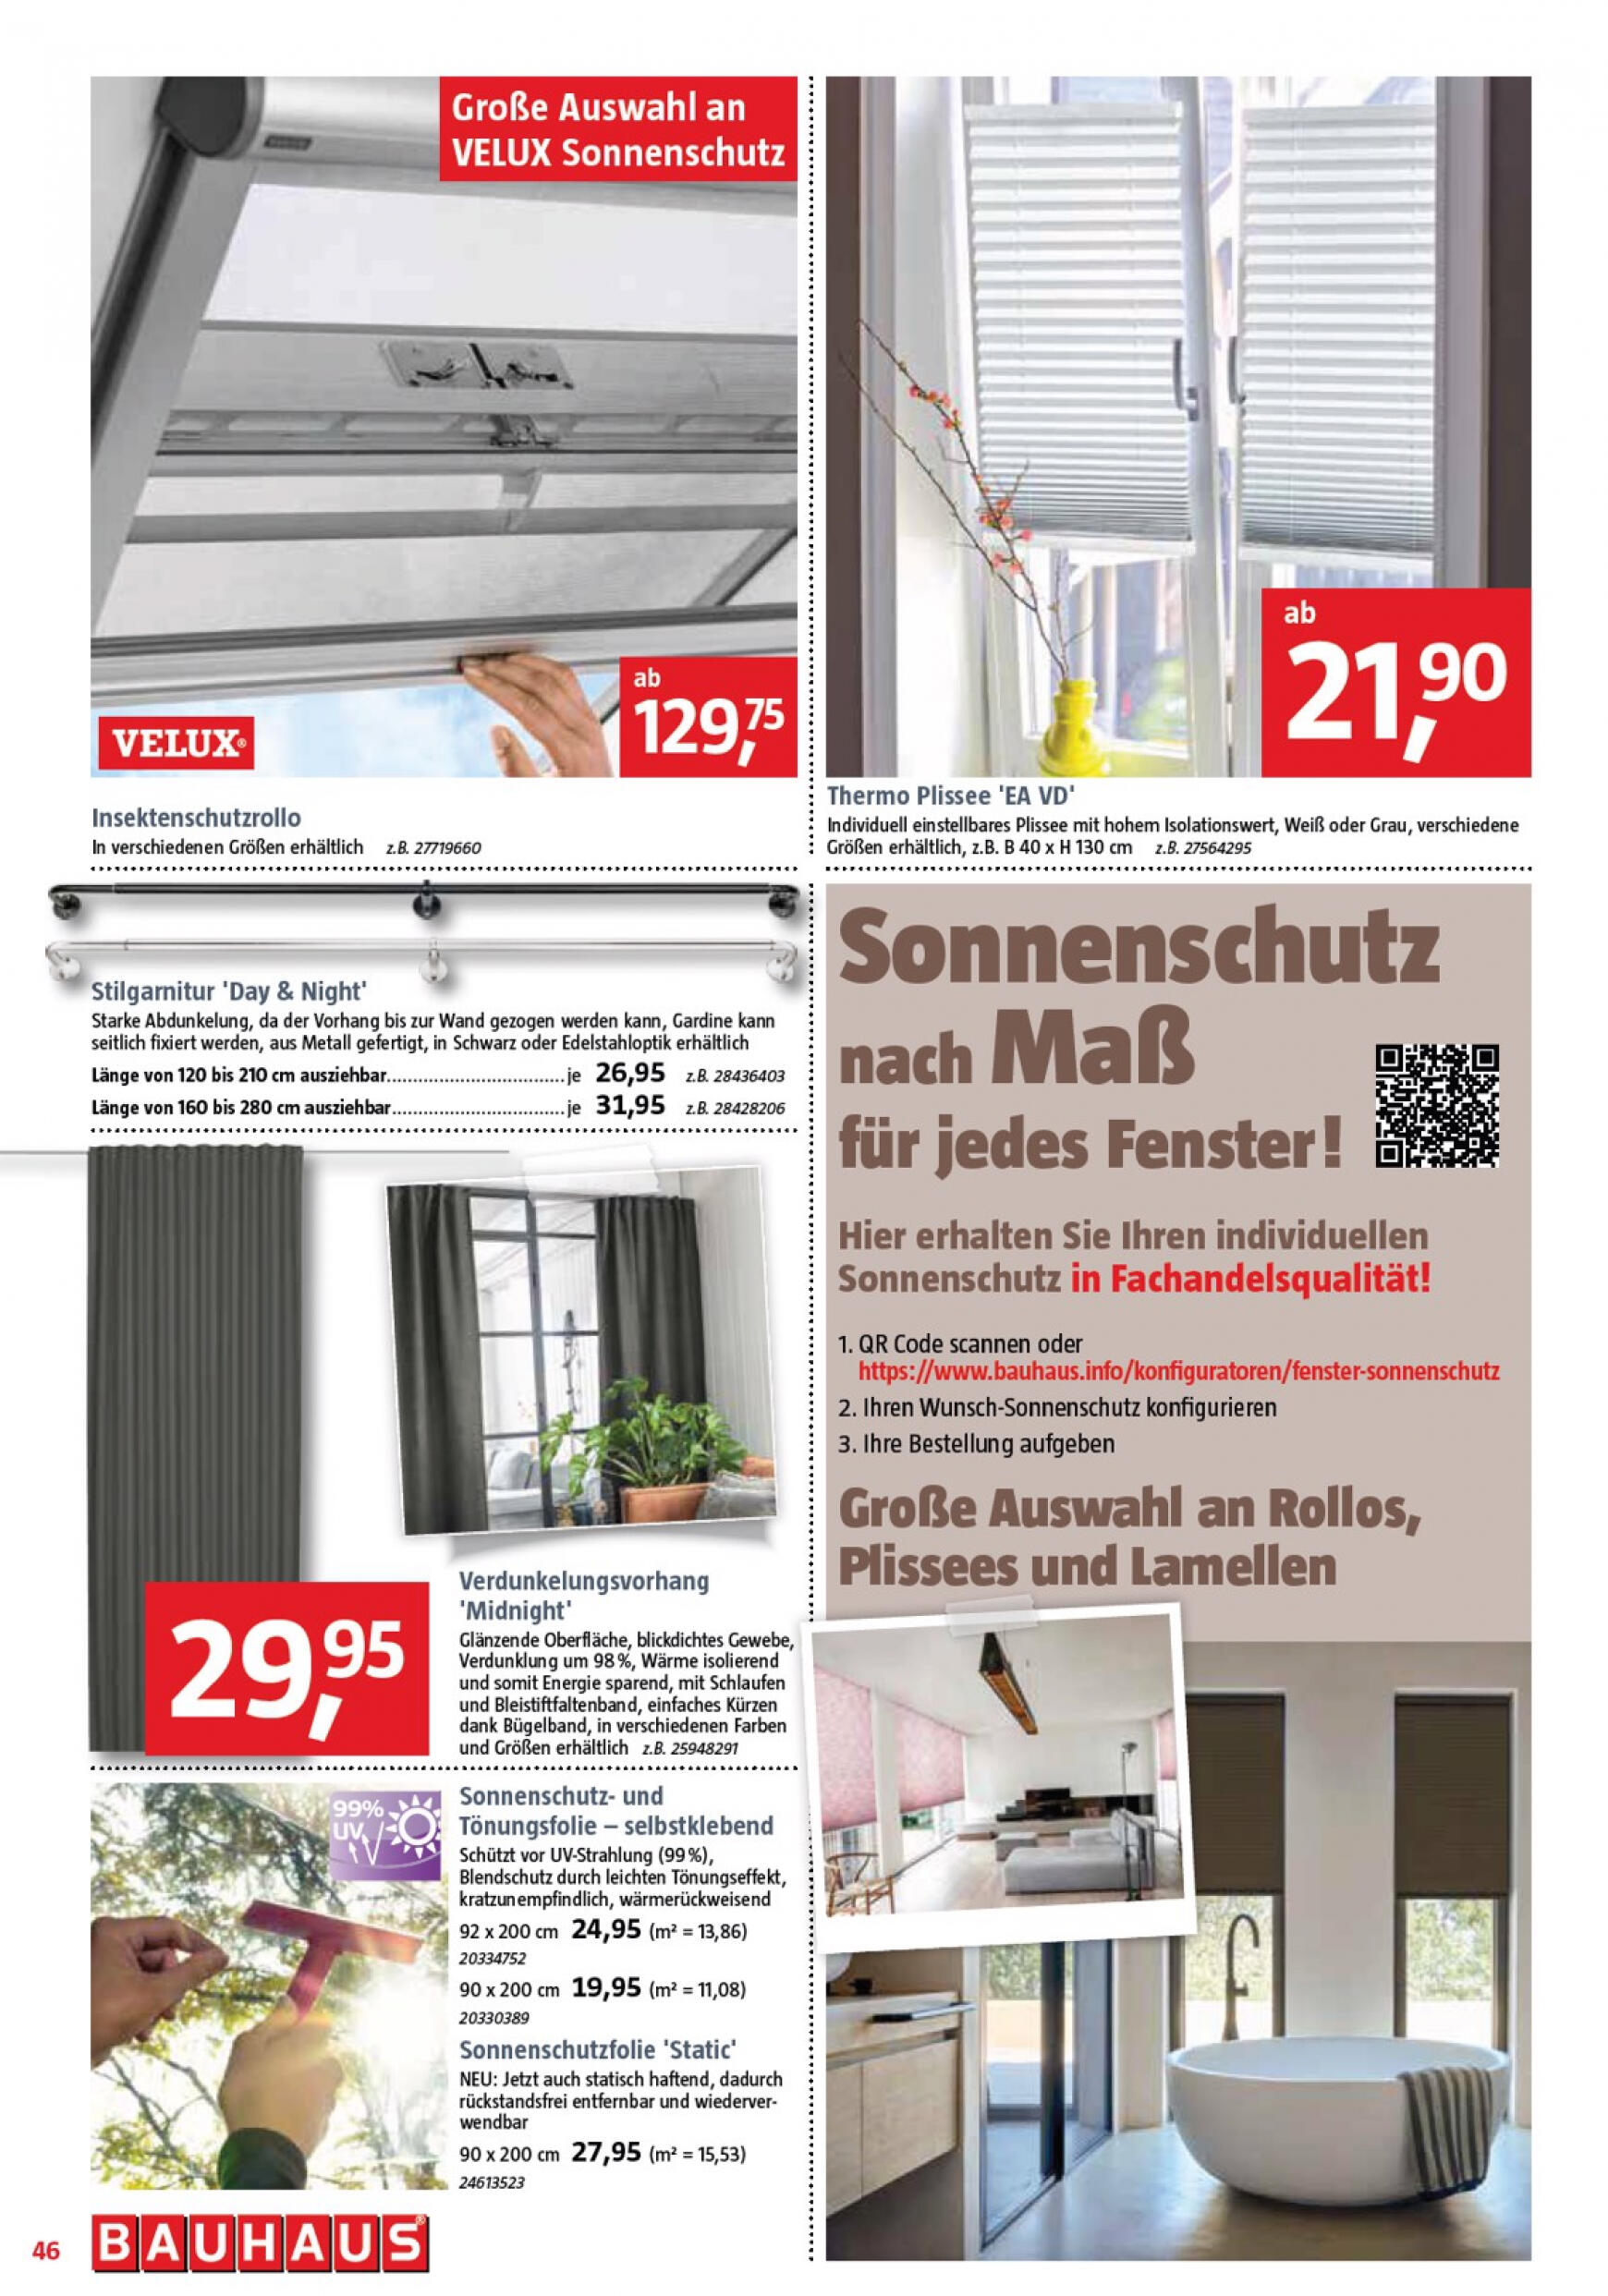 bauhaus - Flyer BAUHAUS aktuell 27.04. - 01.06. - page: 46